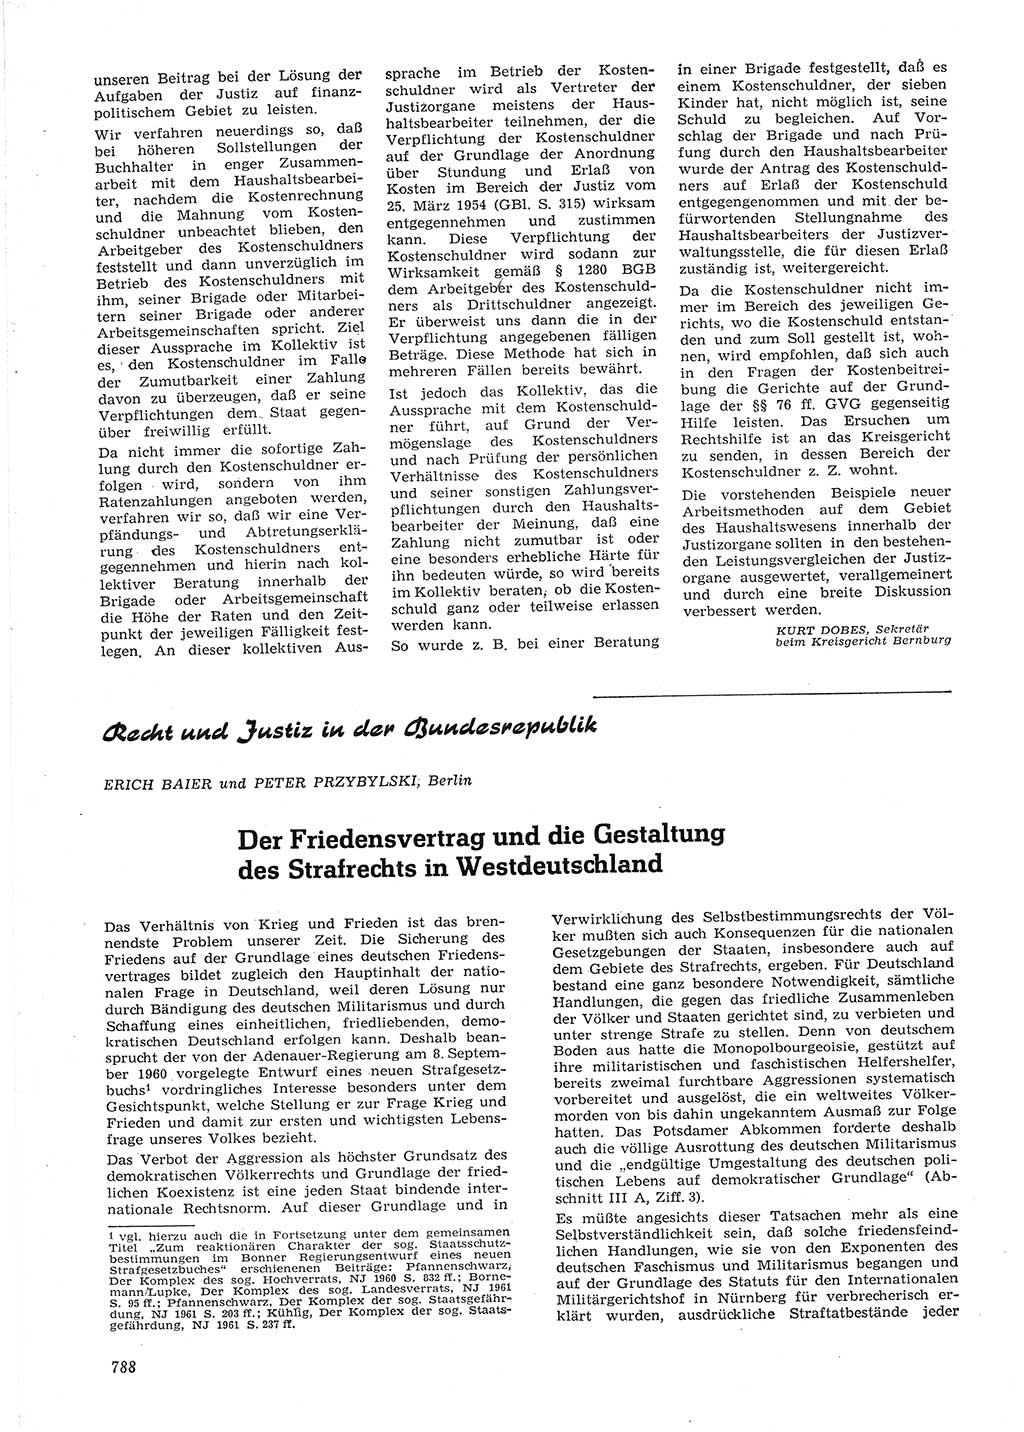 Neue Justiz (NJ), Zeitschrift für Recht und Rechtswissenschaft [Deutsche Demokratische Republik (DDR)], 15. Jahrgang 1961, Seite 788 (NJ DDR 1961, S. 788)